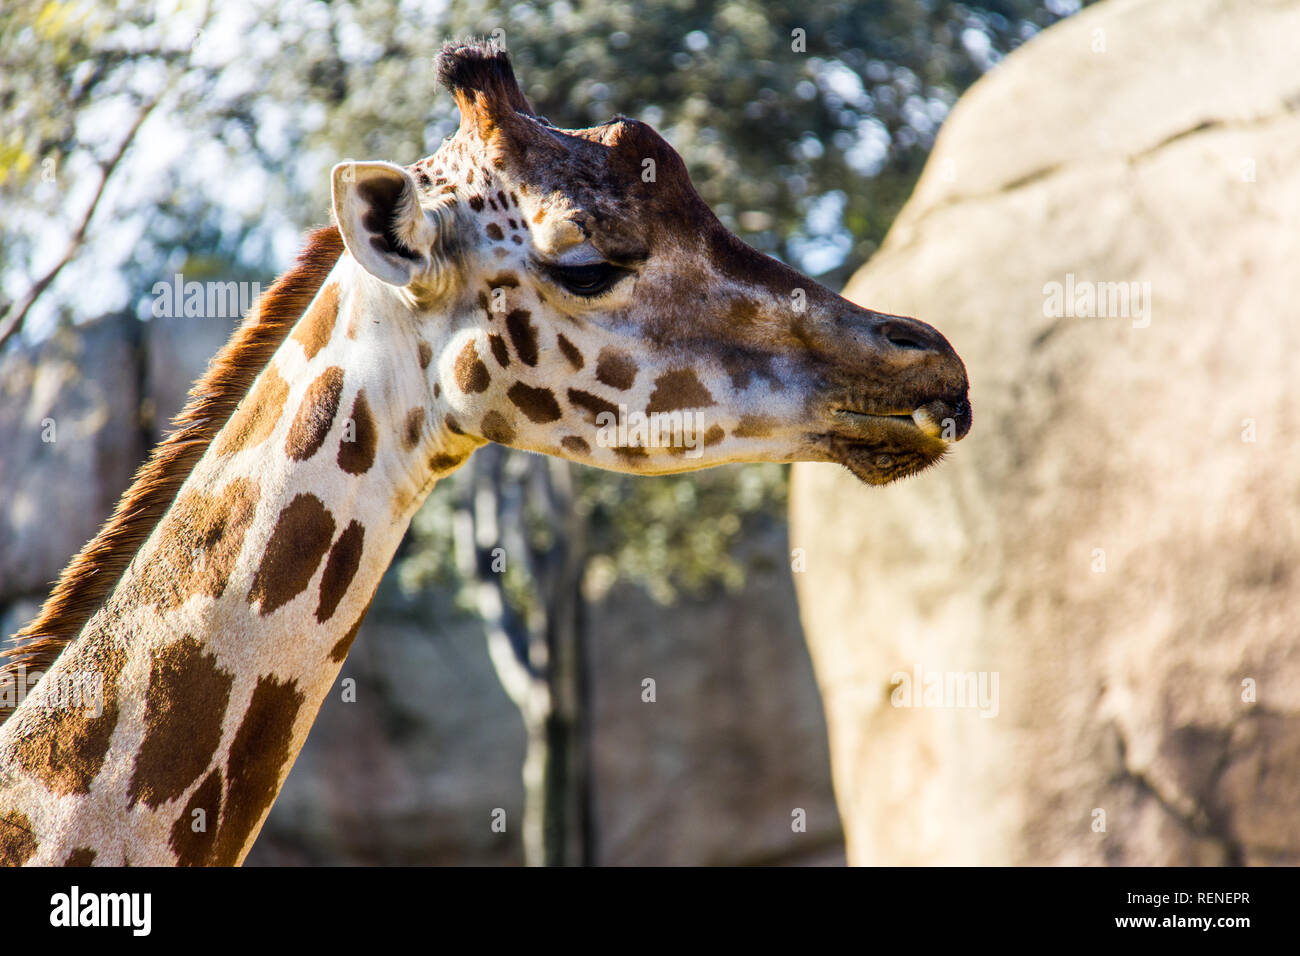 A giraffe, giraffa camelopardalis, in a zoo of Spain Stock Photo